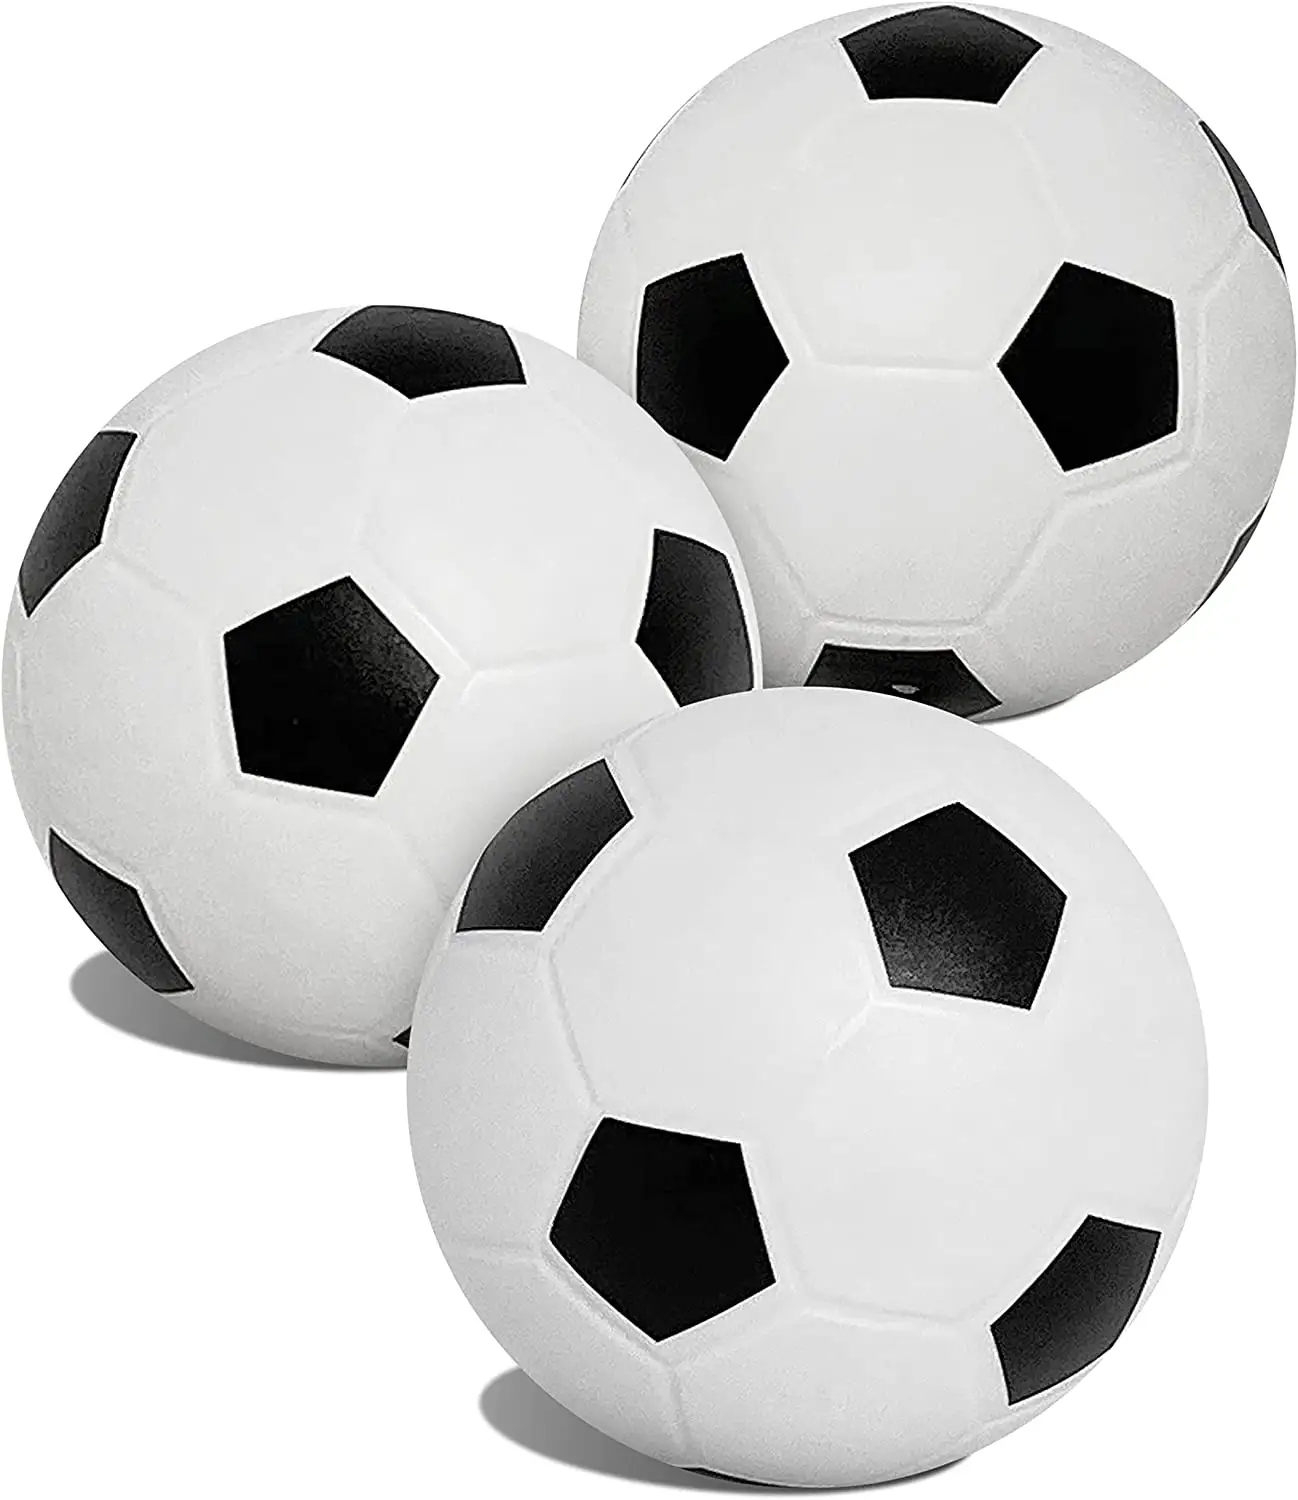 الجملة شعار مخصص ترويجي مطبوعة اللون حجم PVC آلة مخيط دائم Balon دي فوتبول كرة القدم كرة القدم